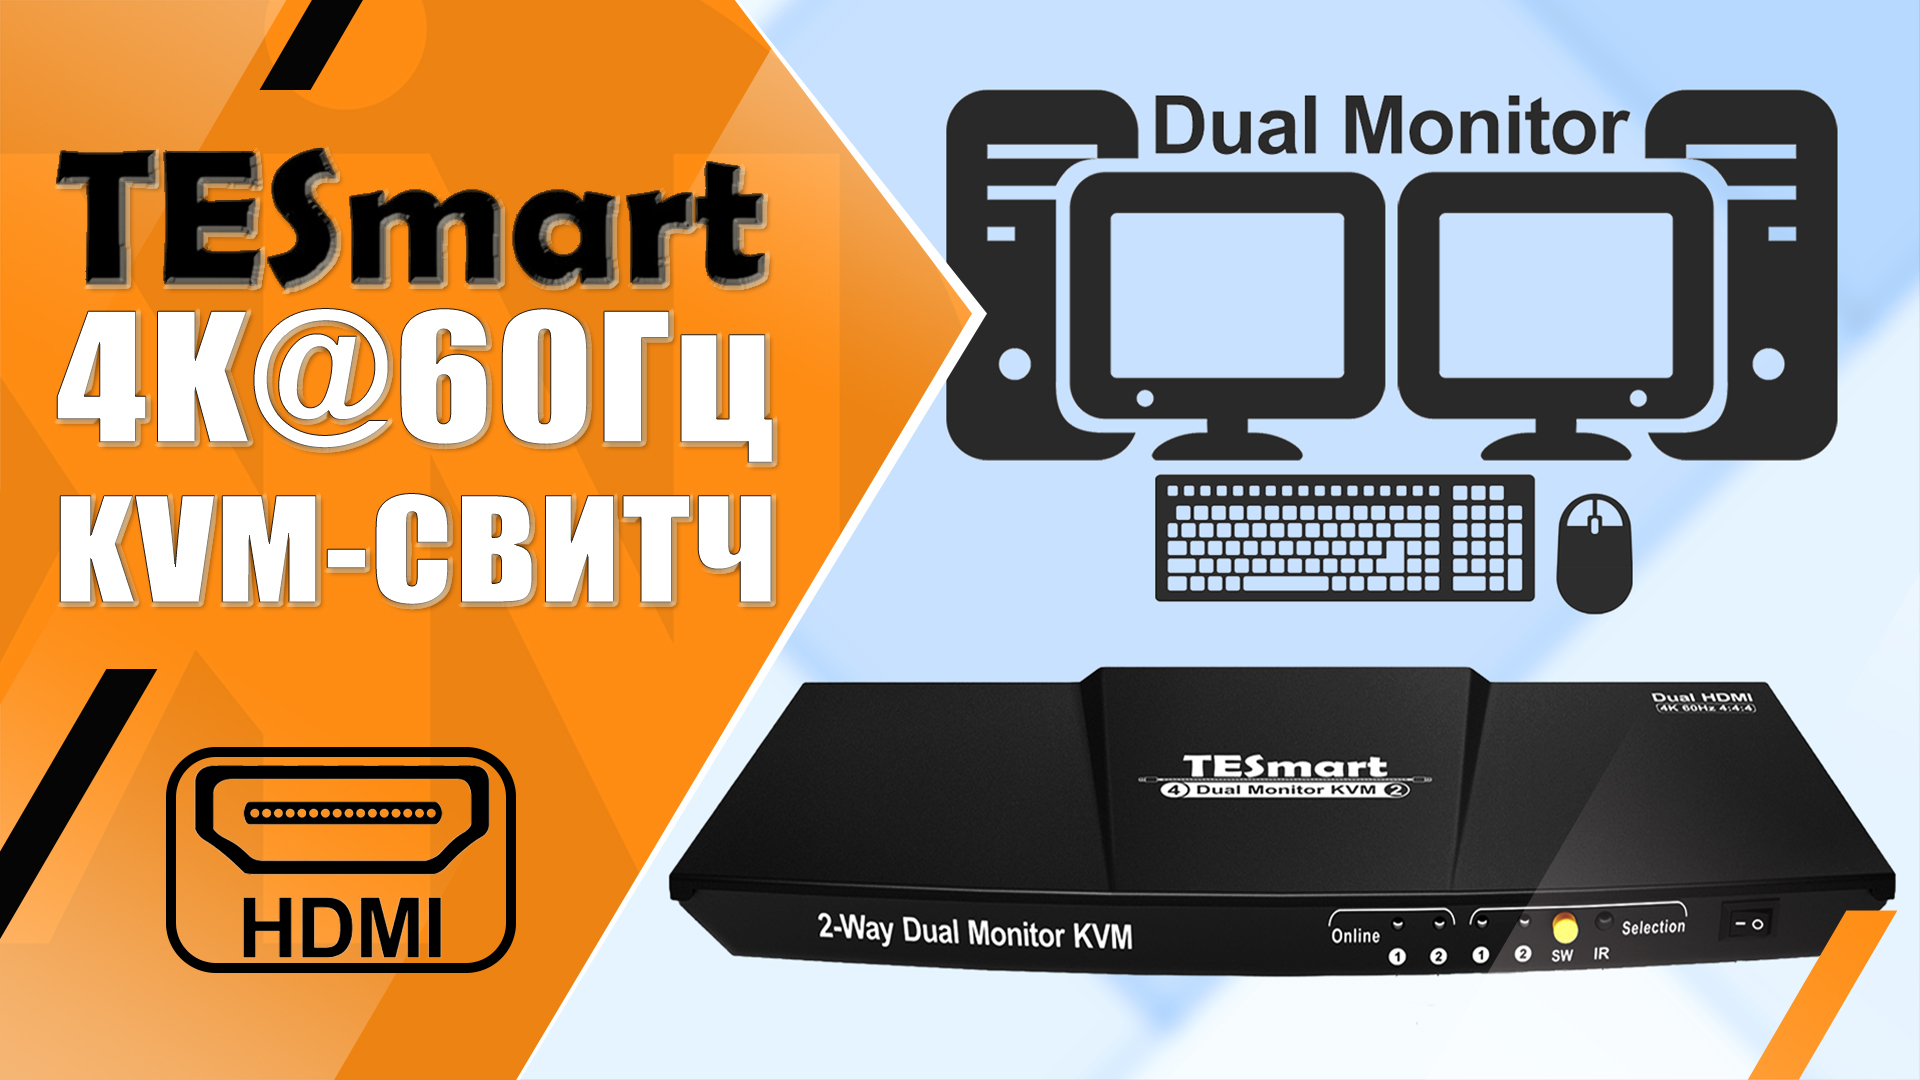 KVM коммутатор TESmart | Управляем двумя ПК | HDMI+HDMI, 4K@60Гц, 2 Монитора + USB2.0 Хаб